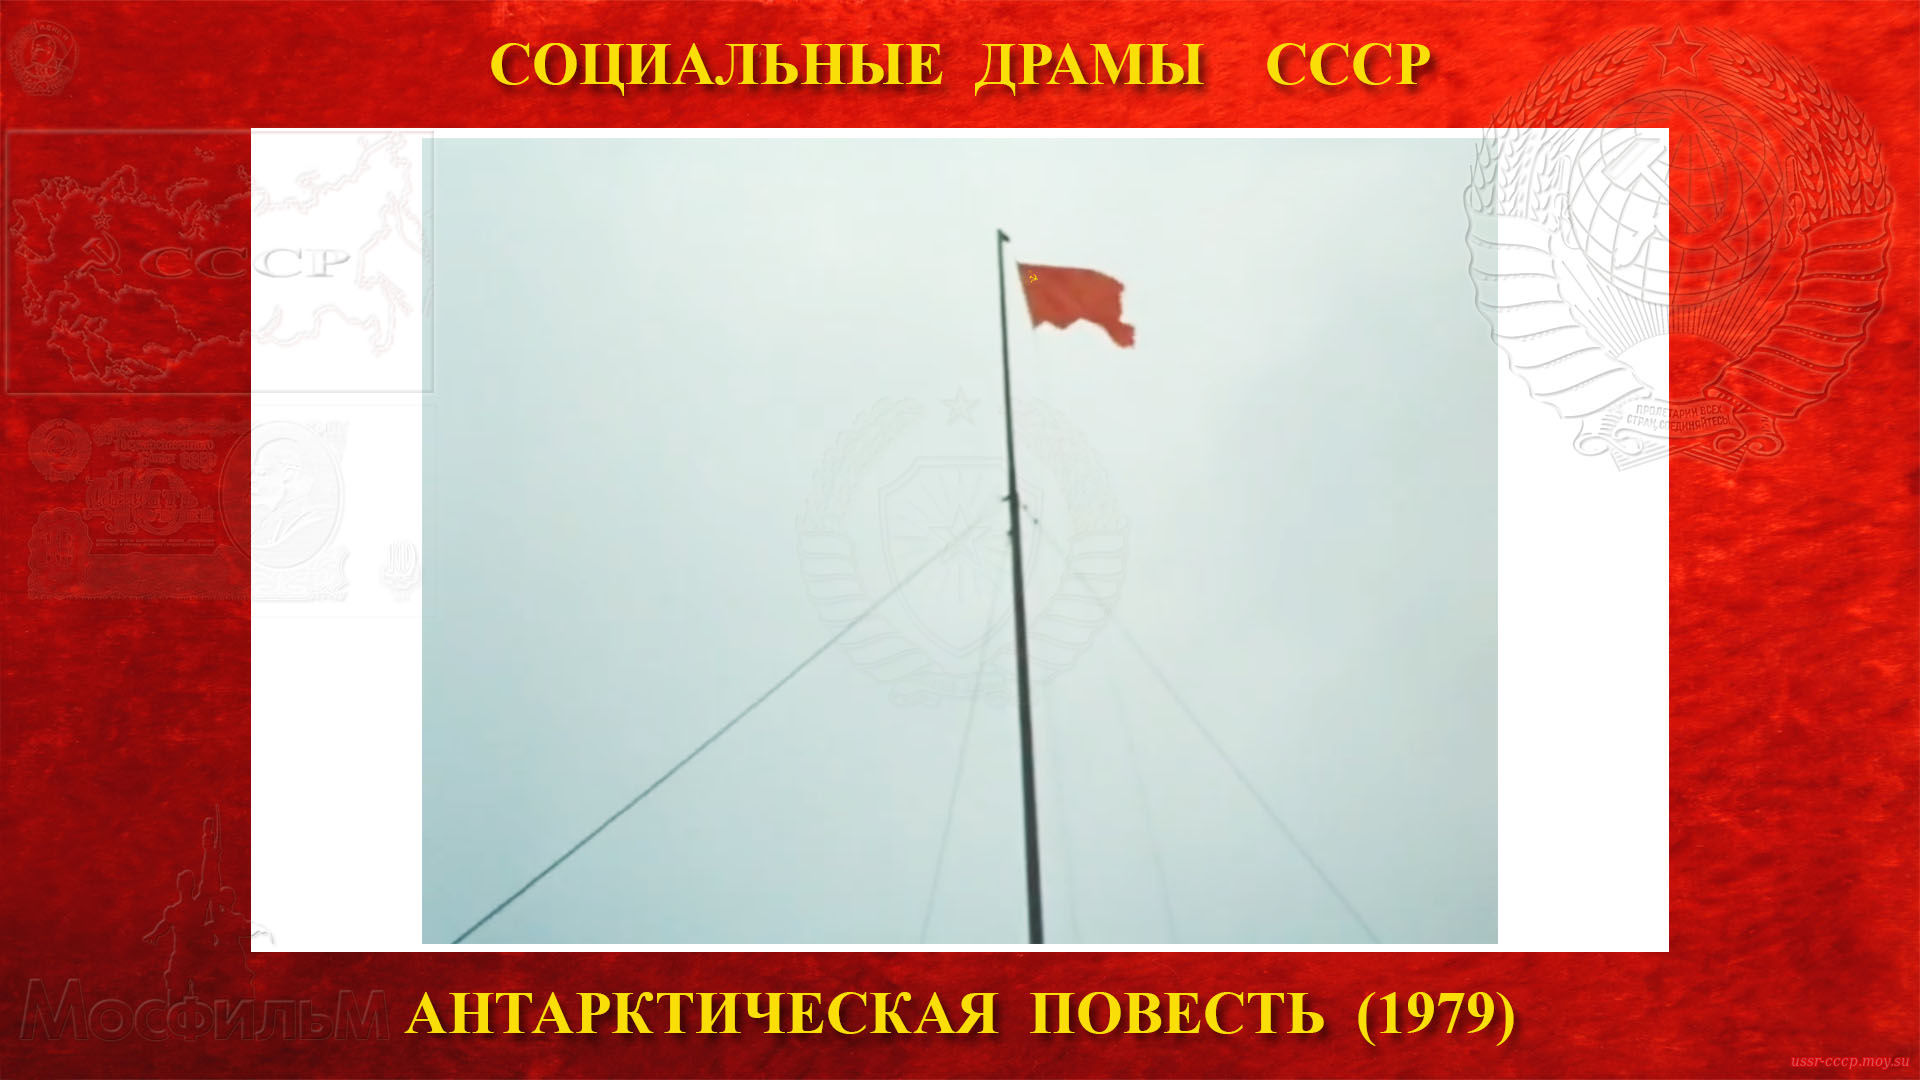 Антарктическая повесть — Затем начальник смены зимовщиков приказывает поднять красный флаг нашей Родины СССР и они все вместе его поднимают над станцией «Восток»